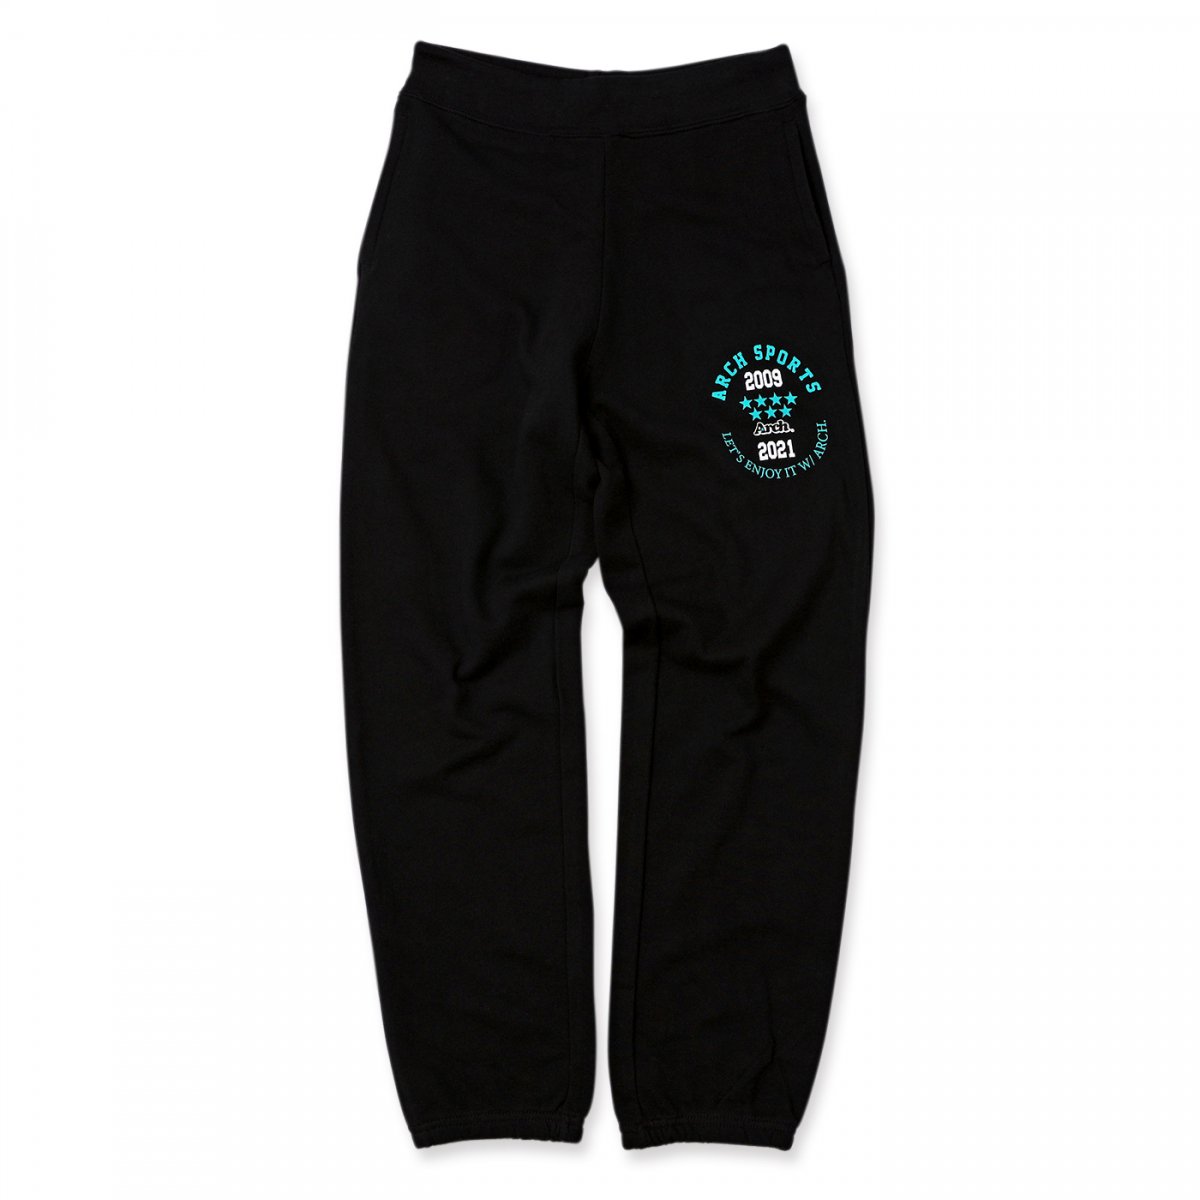 enjoy athletics pants 【black】